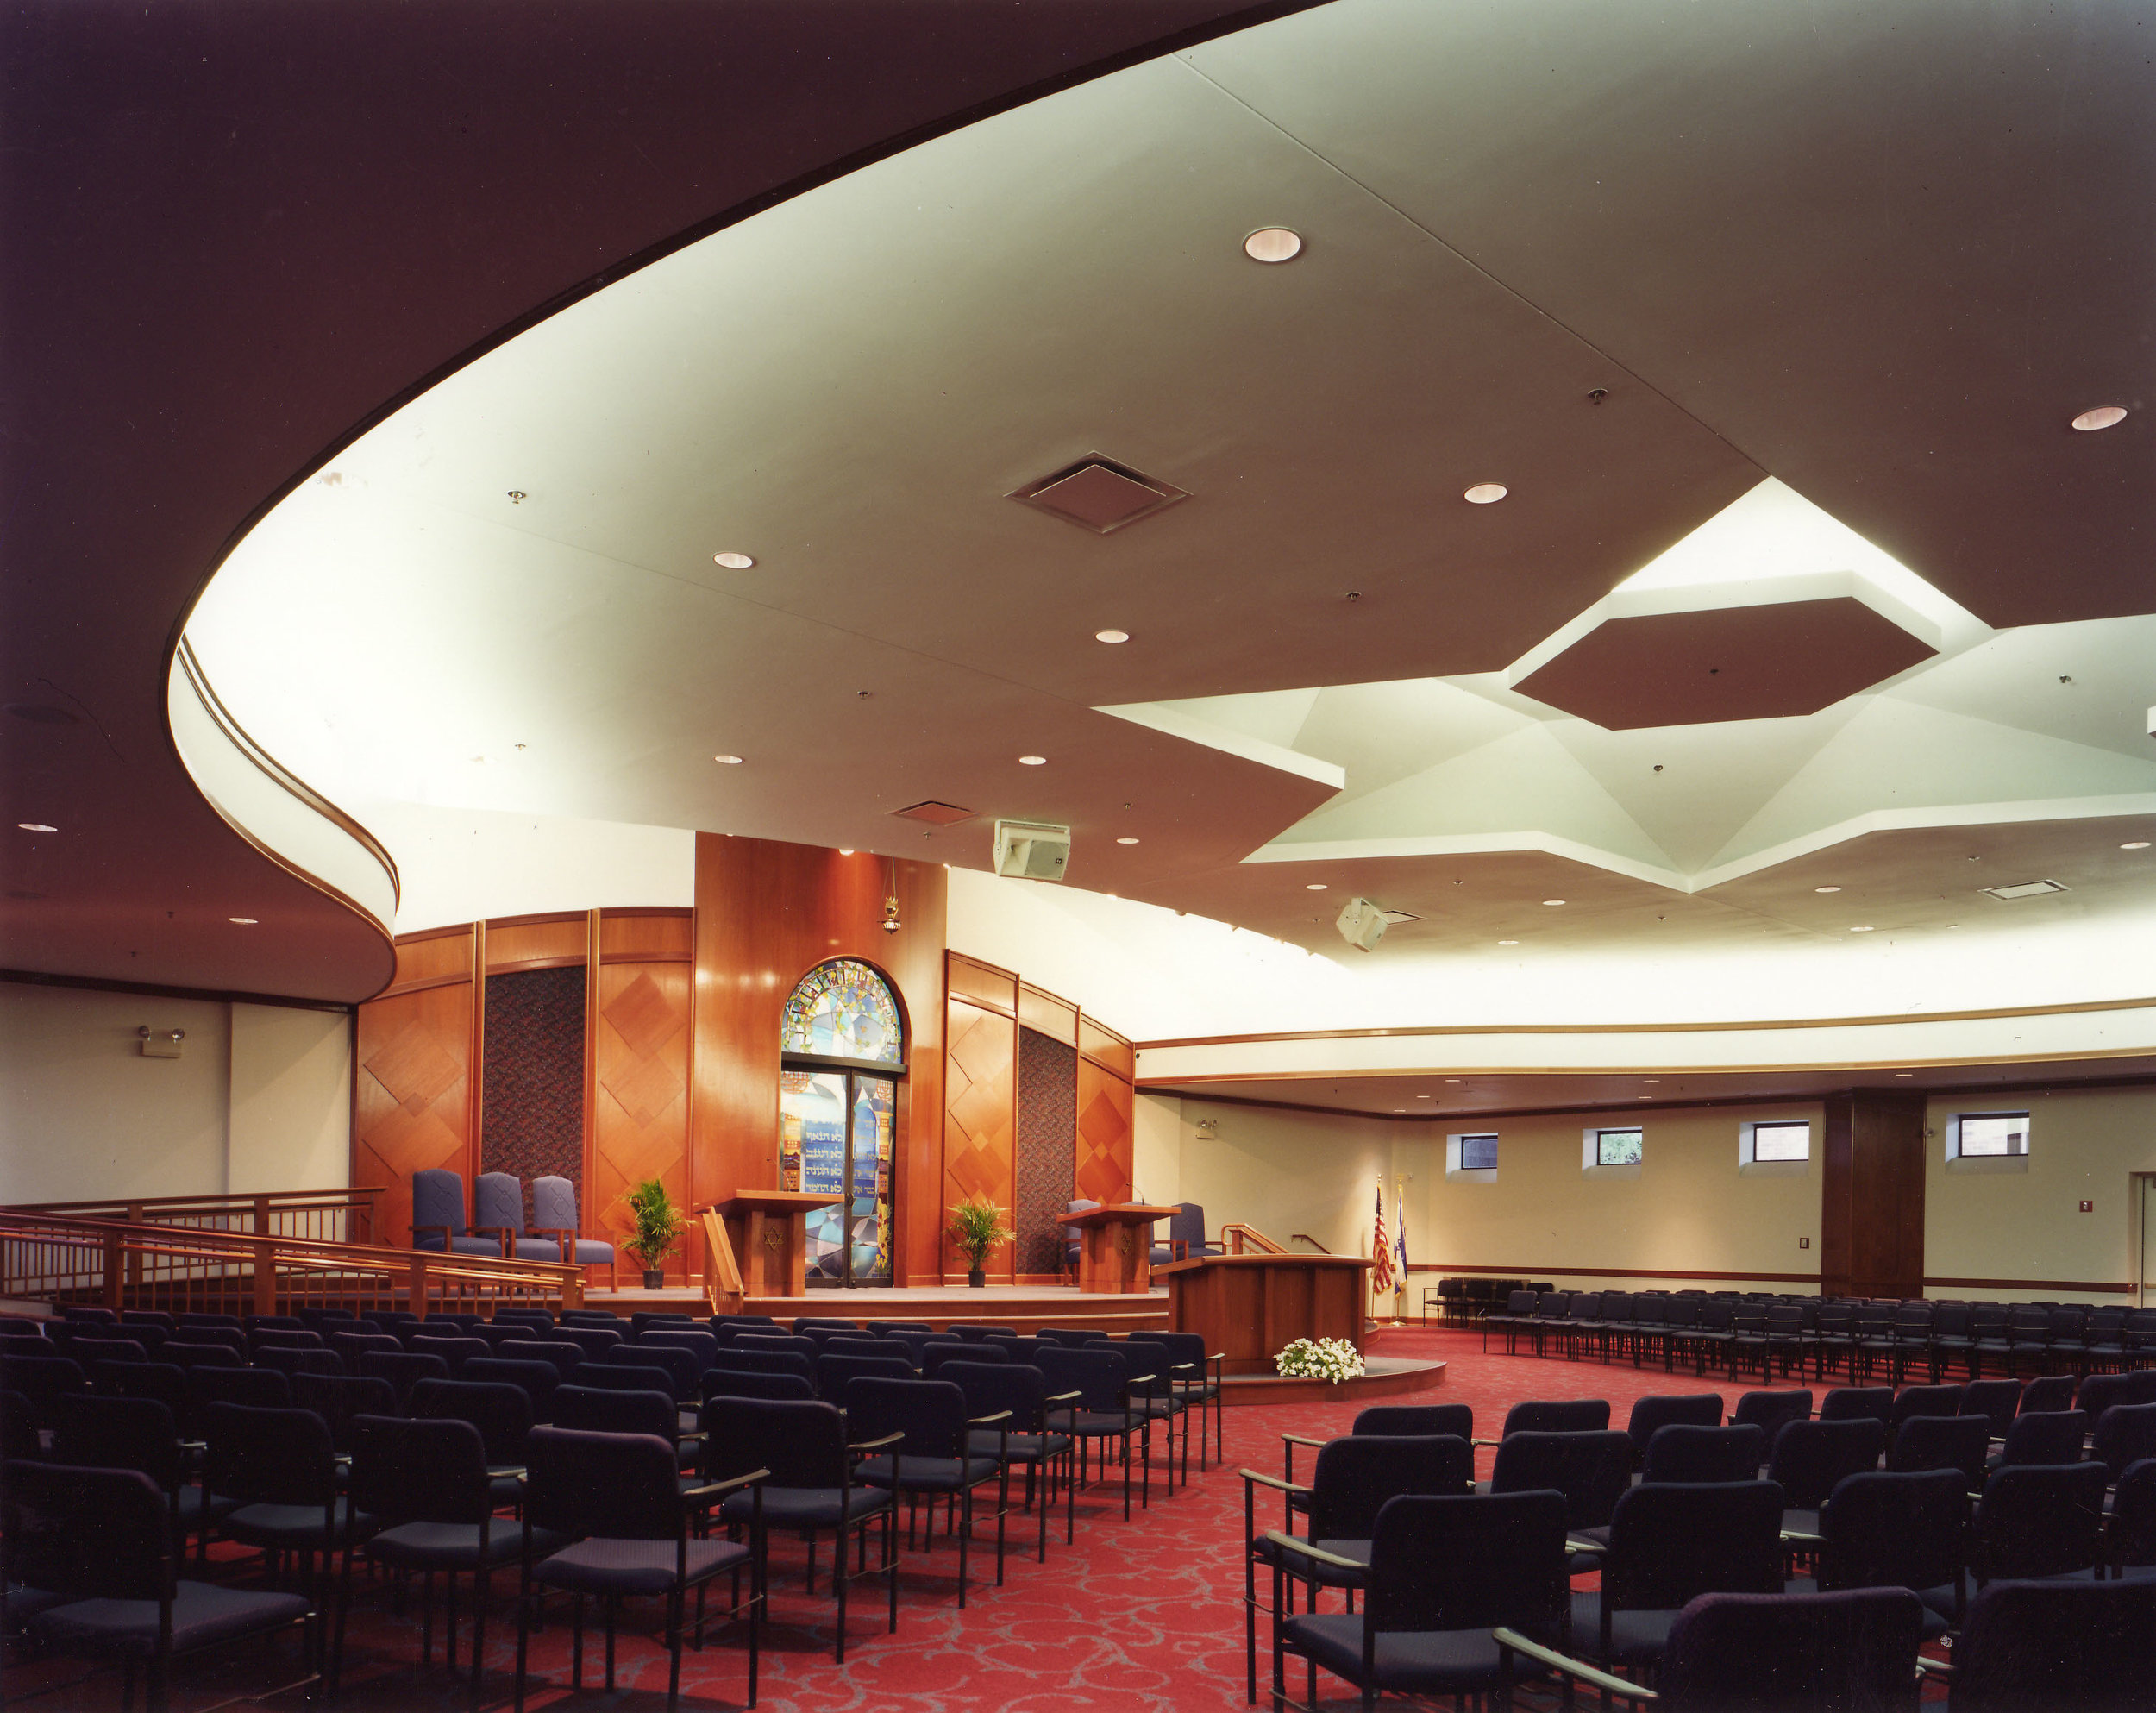 Chicago Religious Beth Am Synagogue Interior